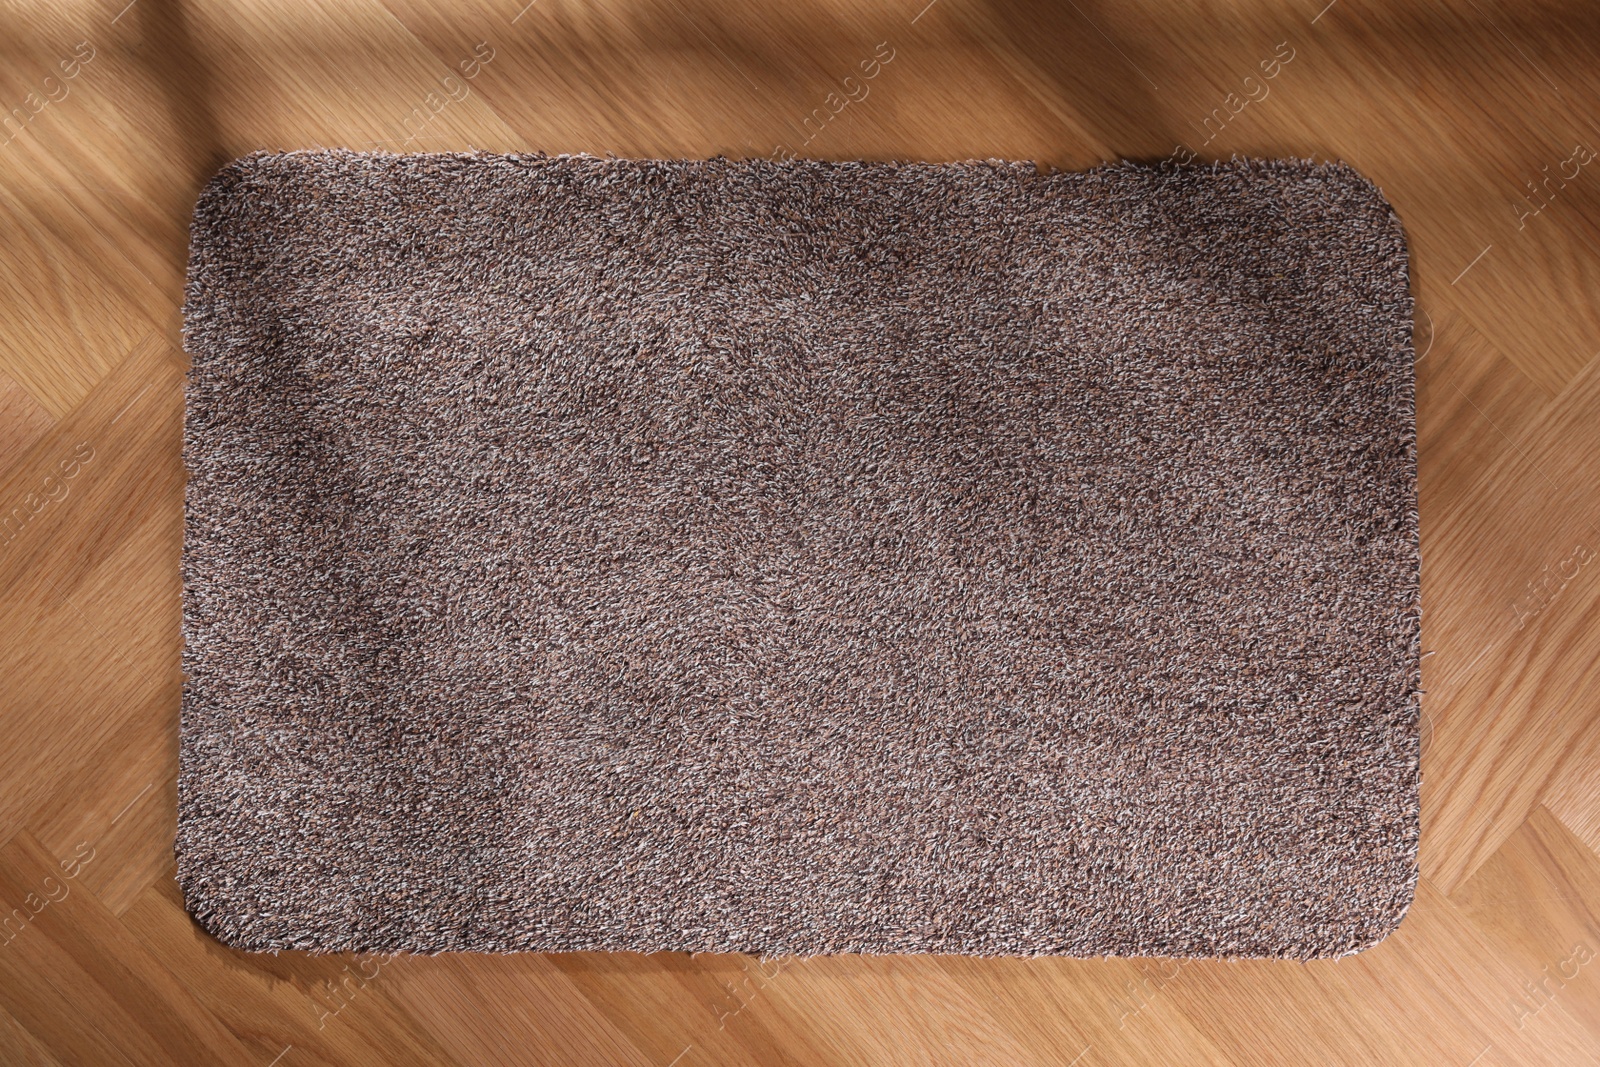 Photo of Stylish door mat on floor, top view